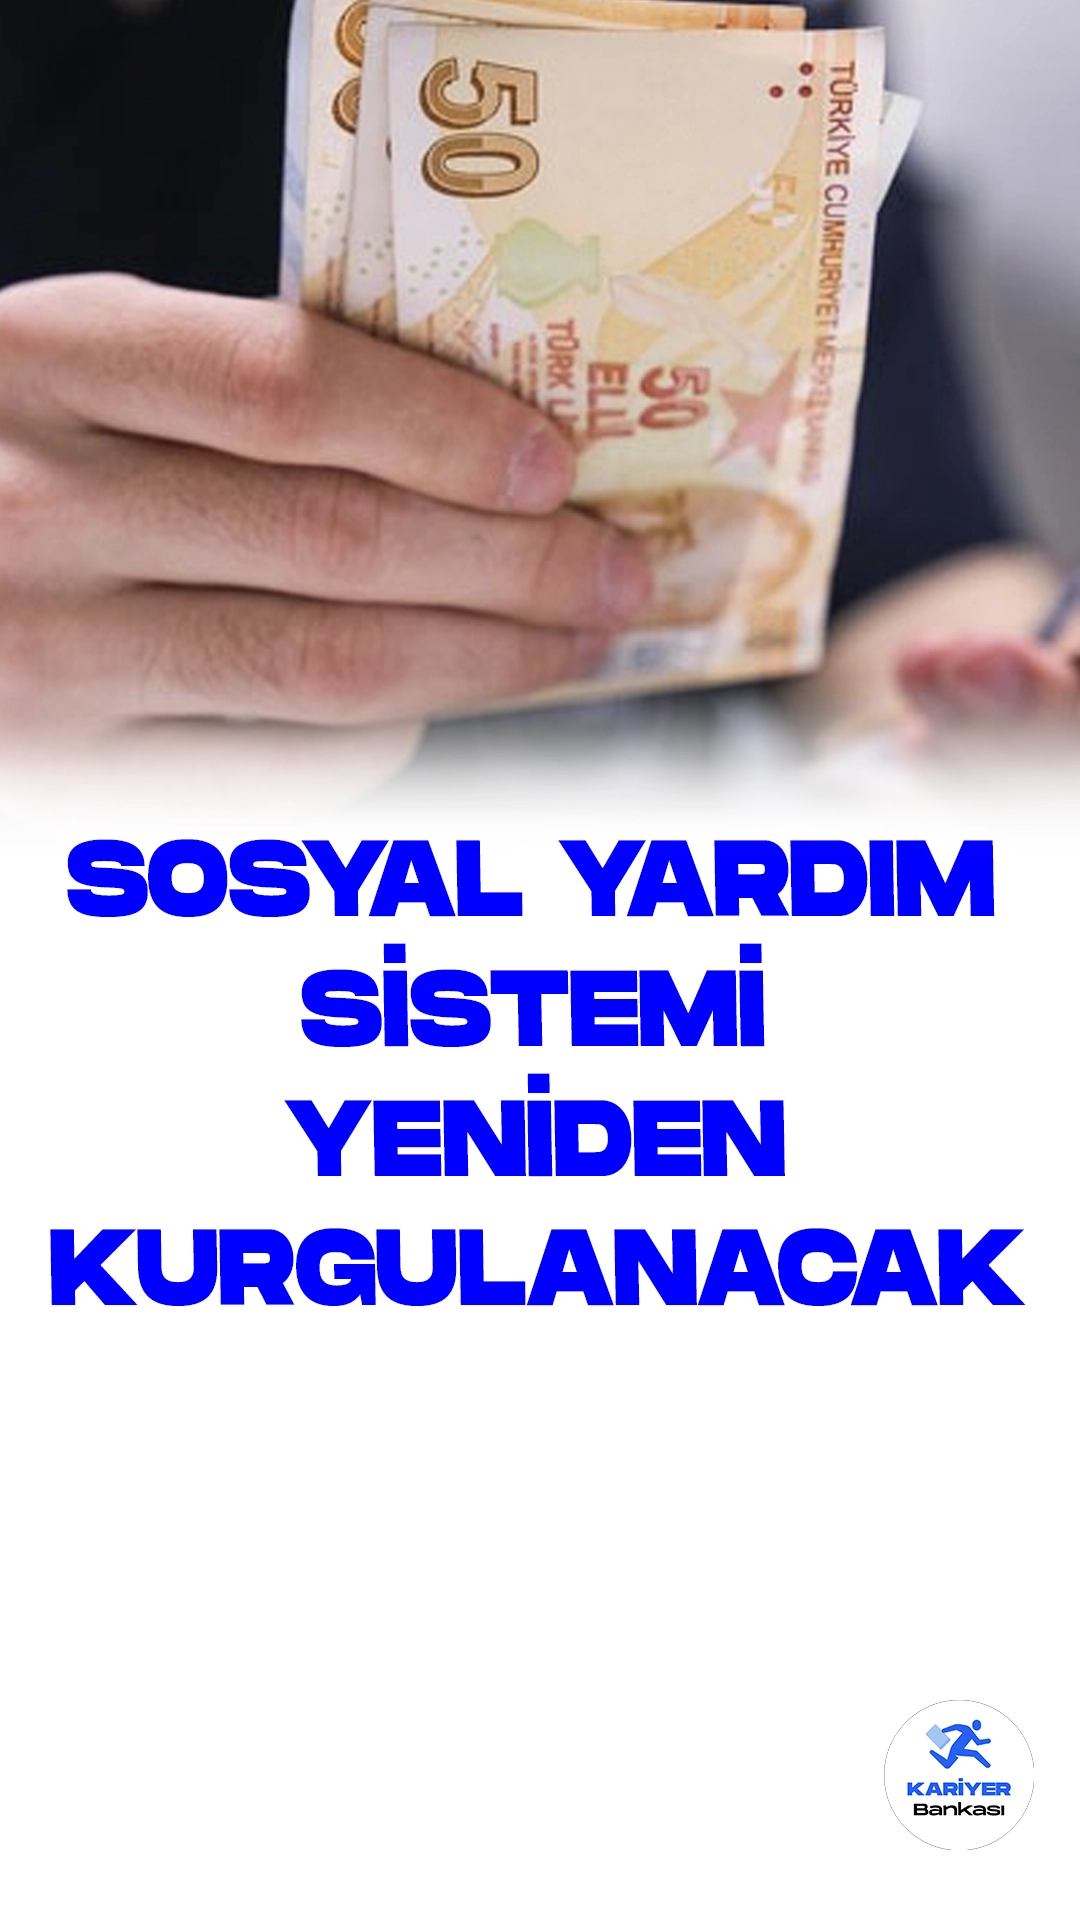 Sosyal Yardım Sistemi Yeniden Kurgulanacak.Türkiye'de sosyal yardım sistemi, iş gücüne katılımını engellememek ve fert başına asgari bir geliri garanti etmek amacıyla gözden geçiriliyor. 12. Kalkınma Planı (2024-2028), Cumhurbaşkanı Recep Tayyip Erdoğan'ın onayının ardından TBMM'ye sunuldu. Planda sosyal hizmetler, sosyal yardımlar ve yoksullukla mücadele konuları öne çıkıyor.